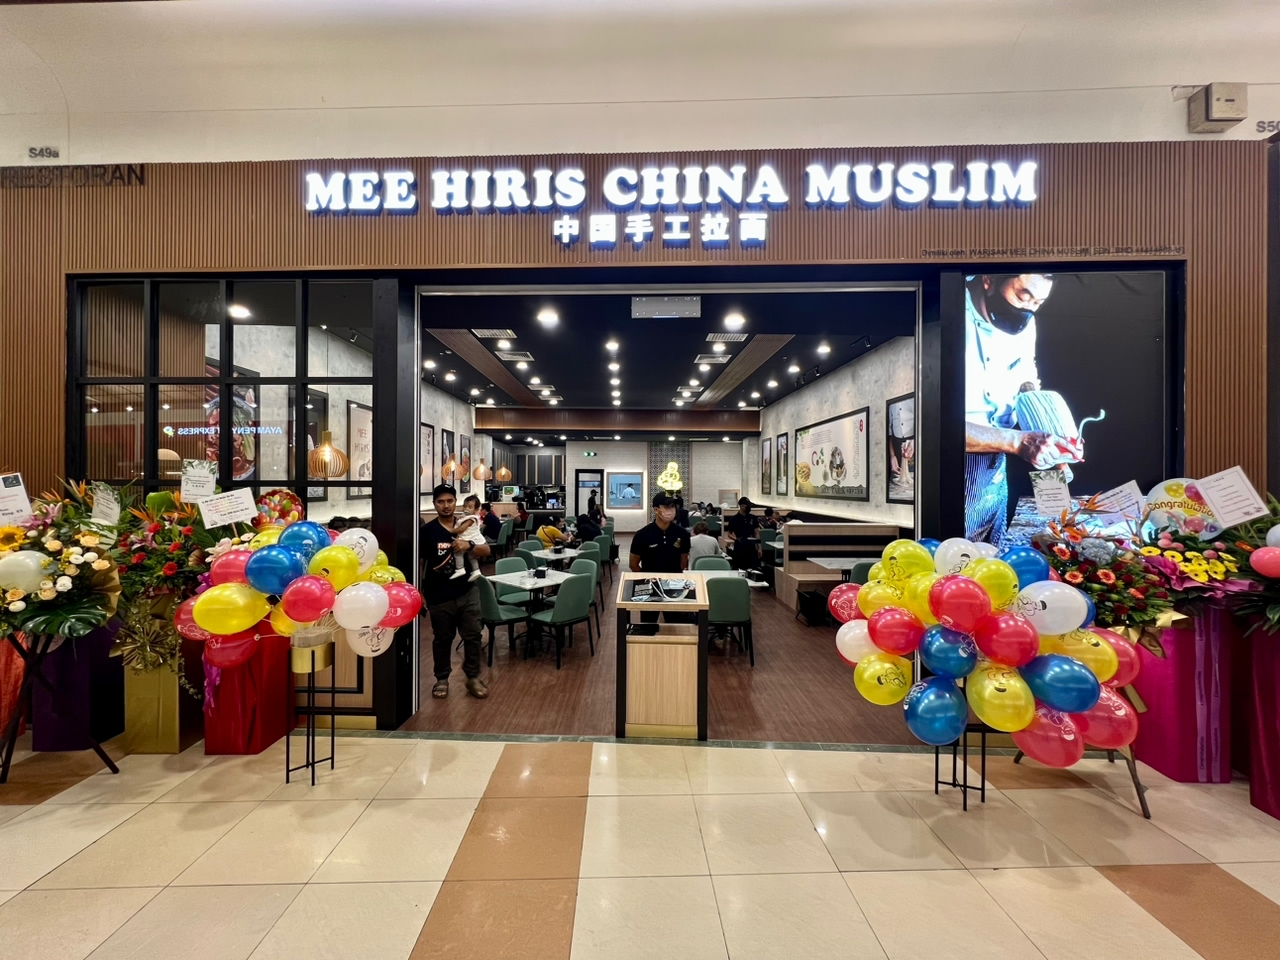 MEE HIRIS CHINA MUSLIM